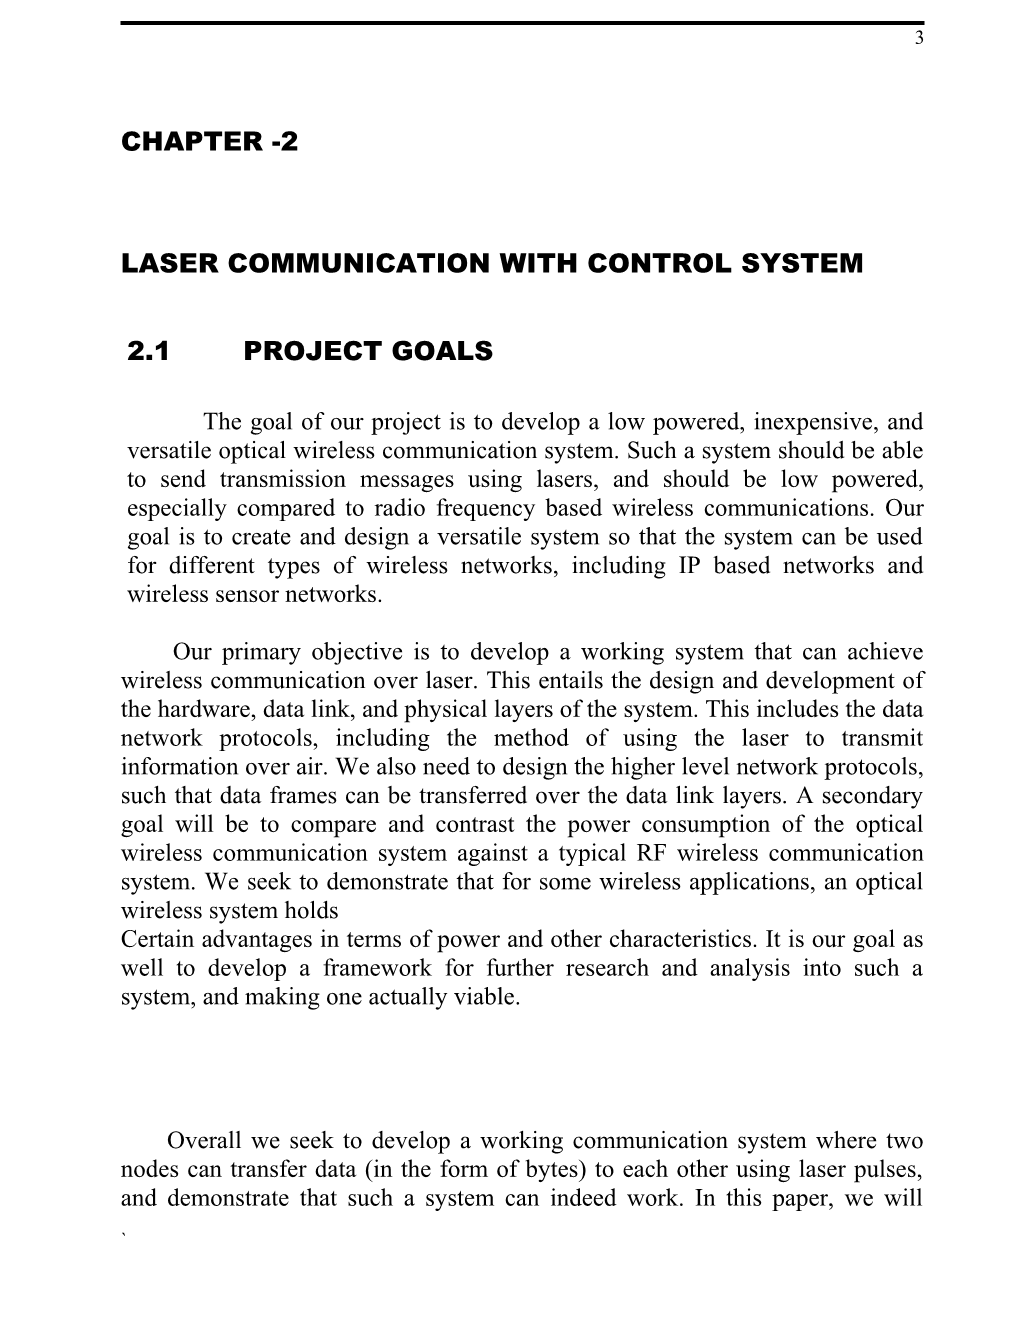 Wireless Communication - Laser Communication